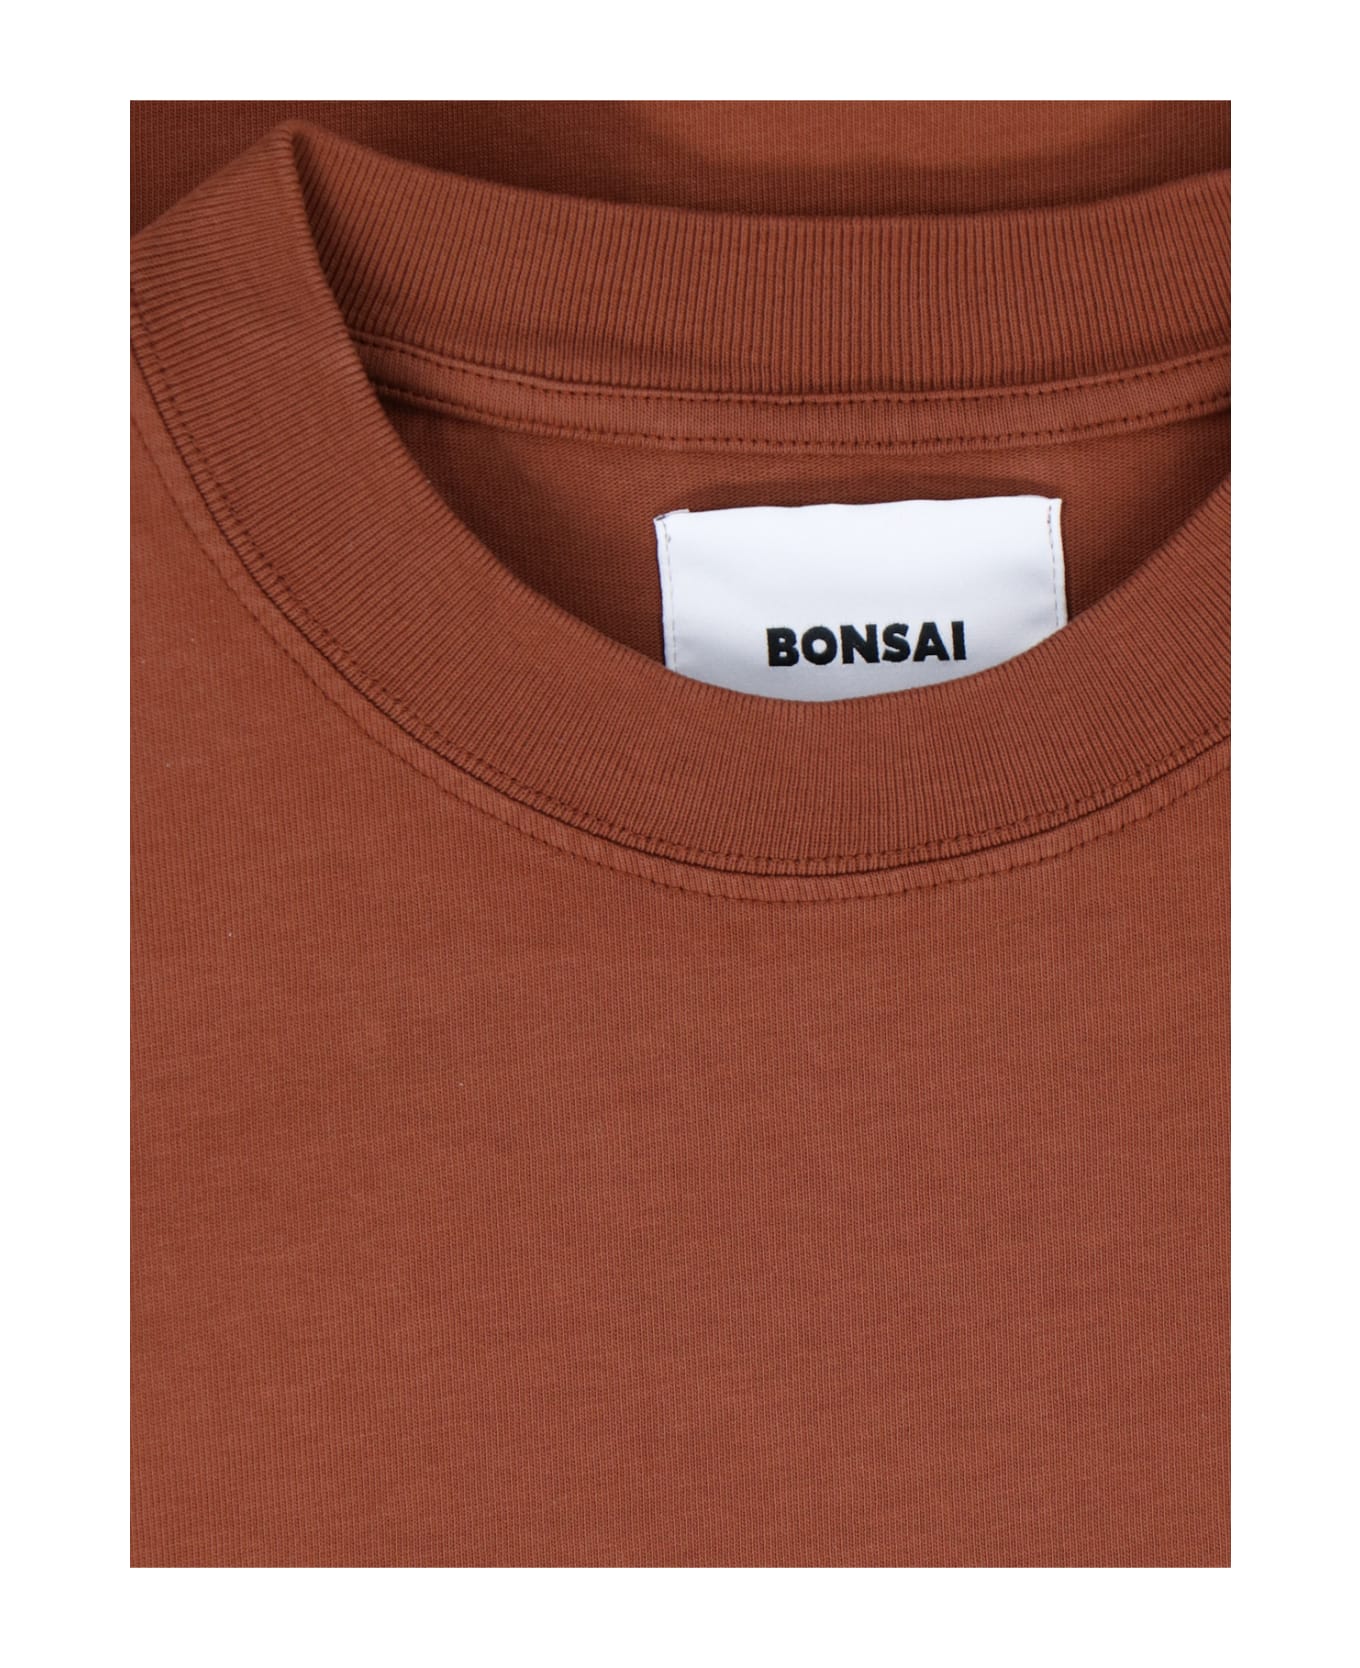 Bonsai Printed T-shirt - Brown